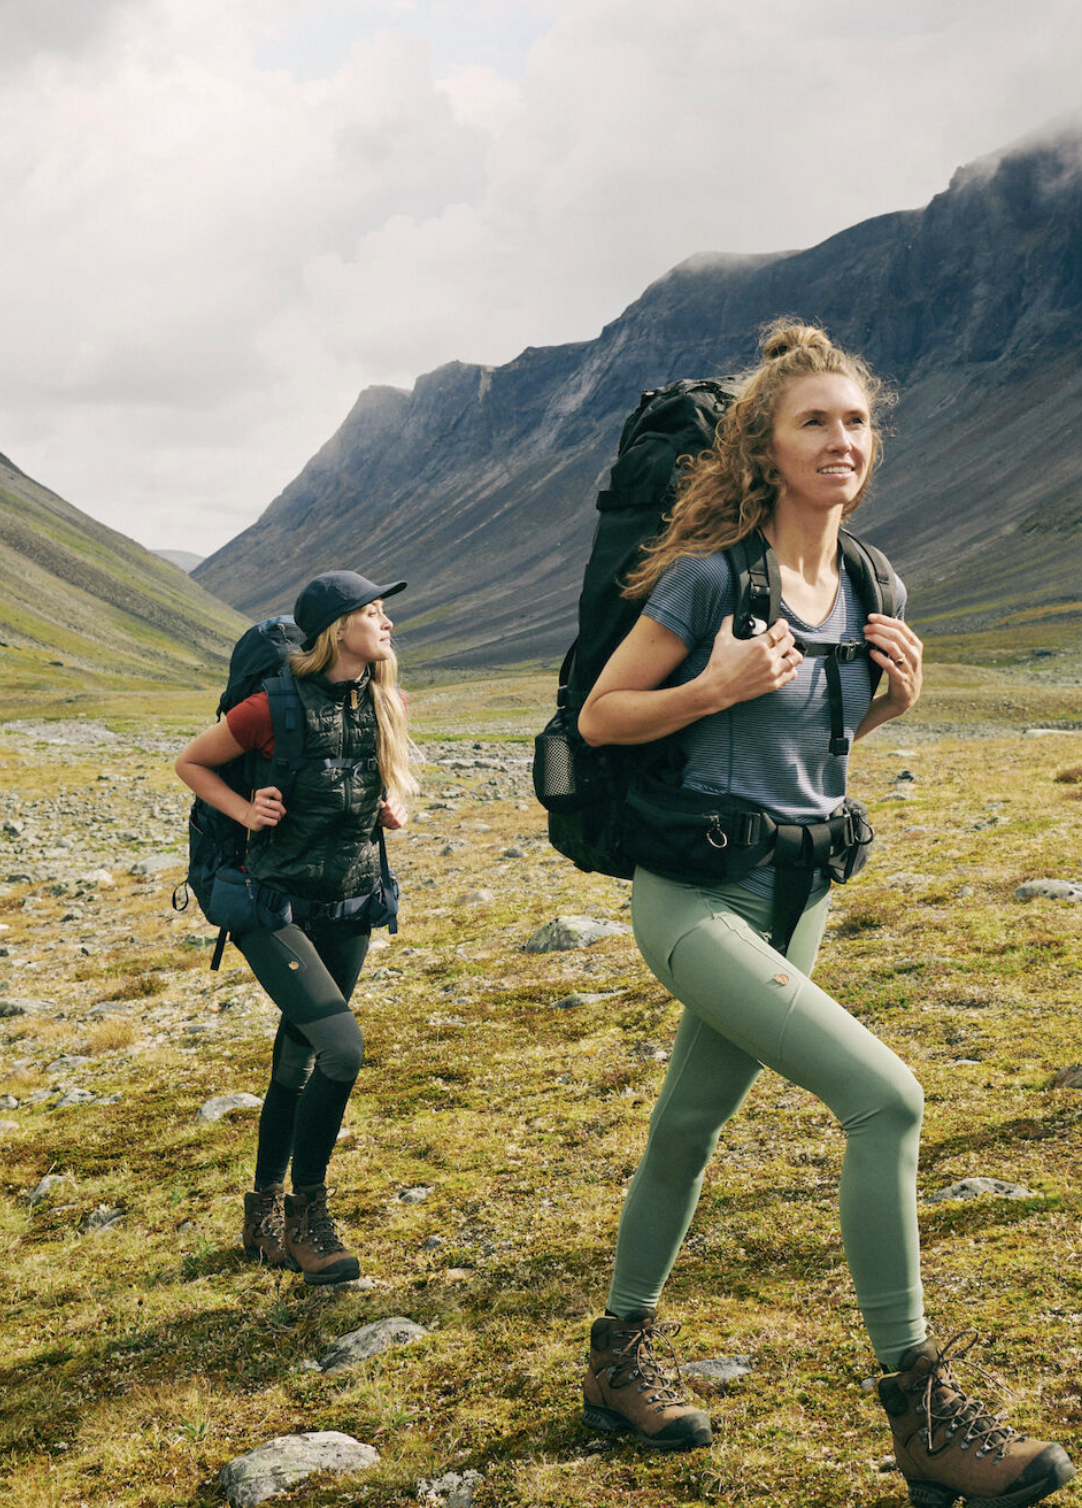 Fjällräven Abisko Trekking Tights Pro: As melhores calças de